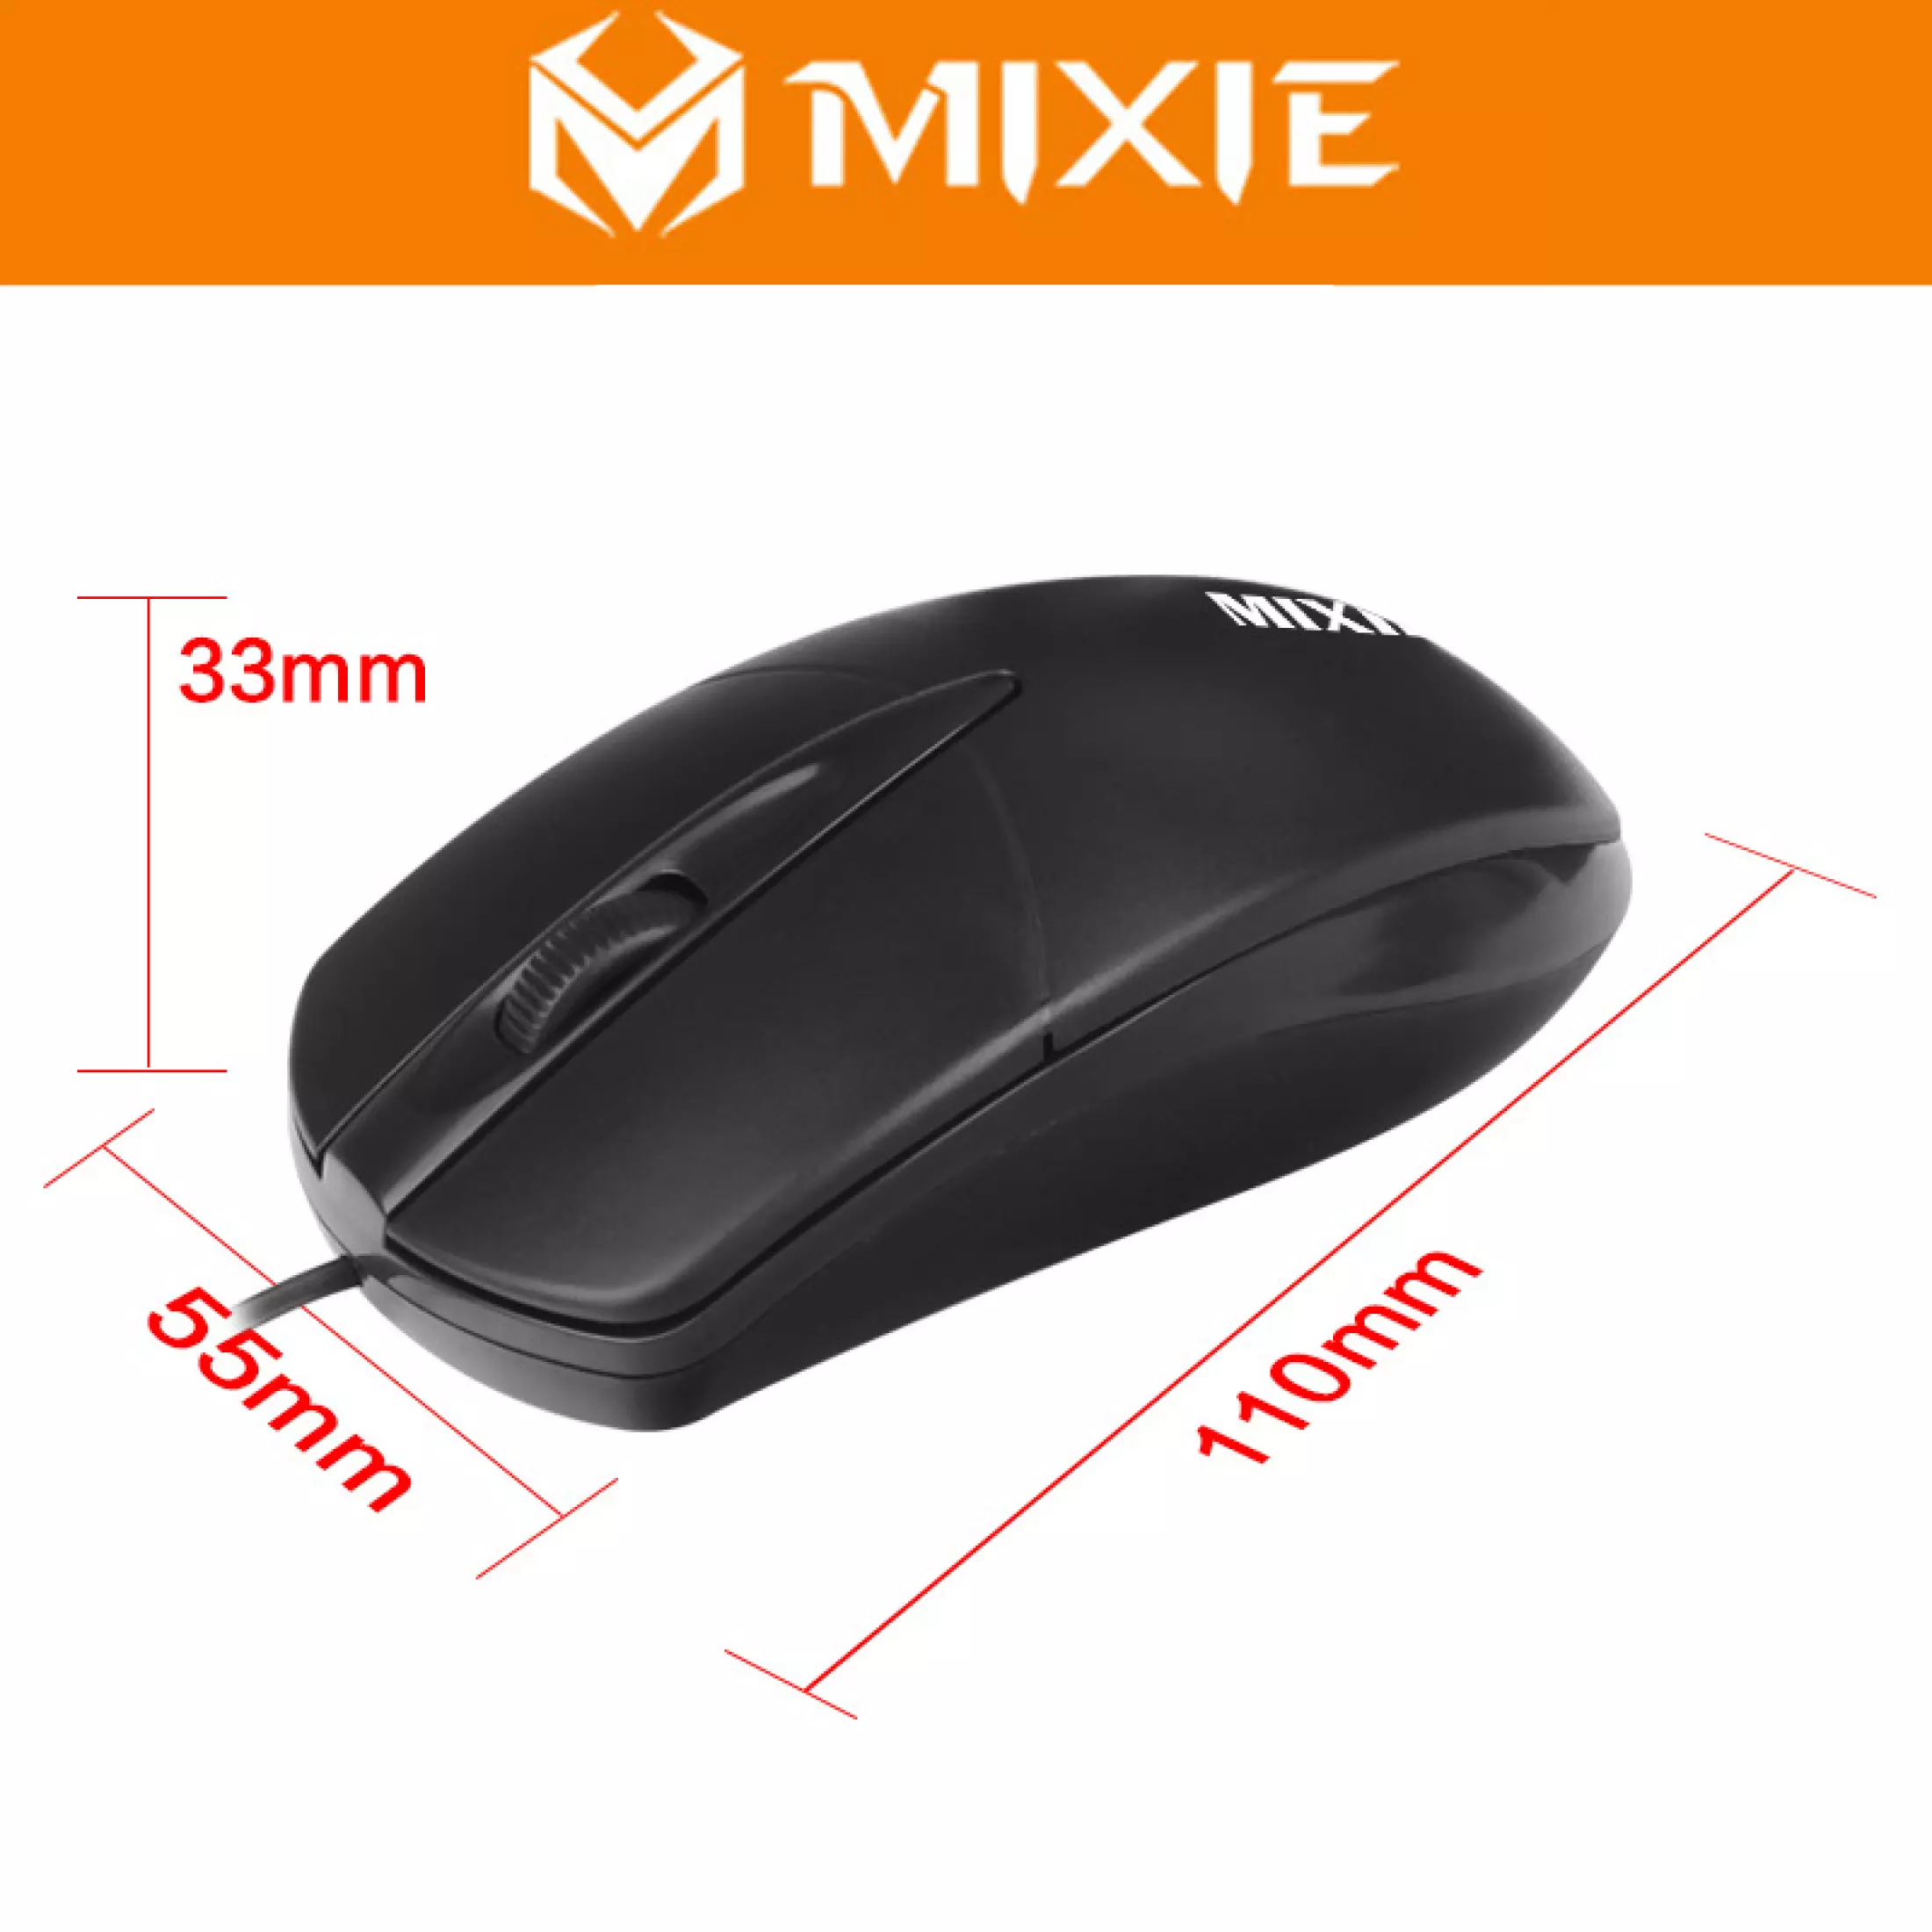 Chuột Mixie X2 có dây